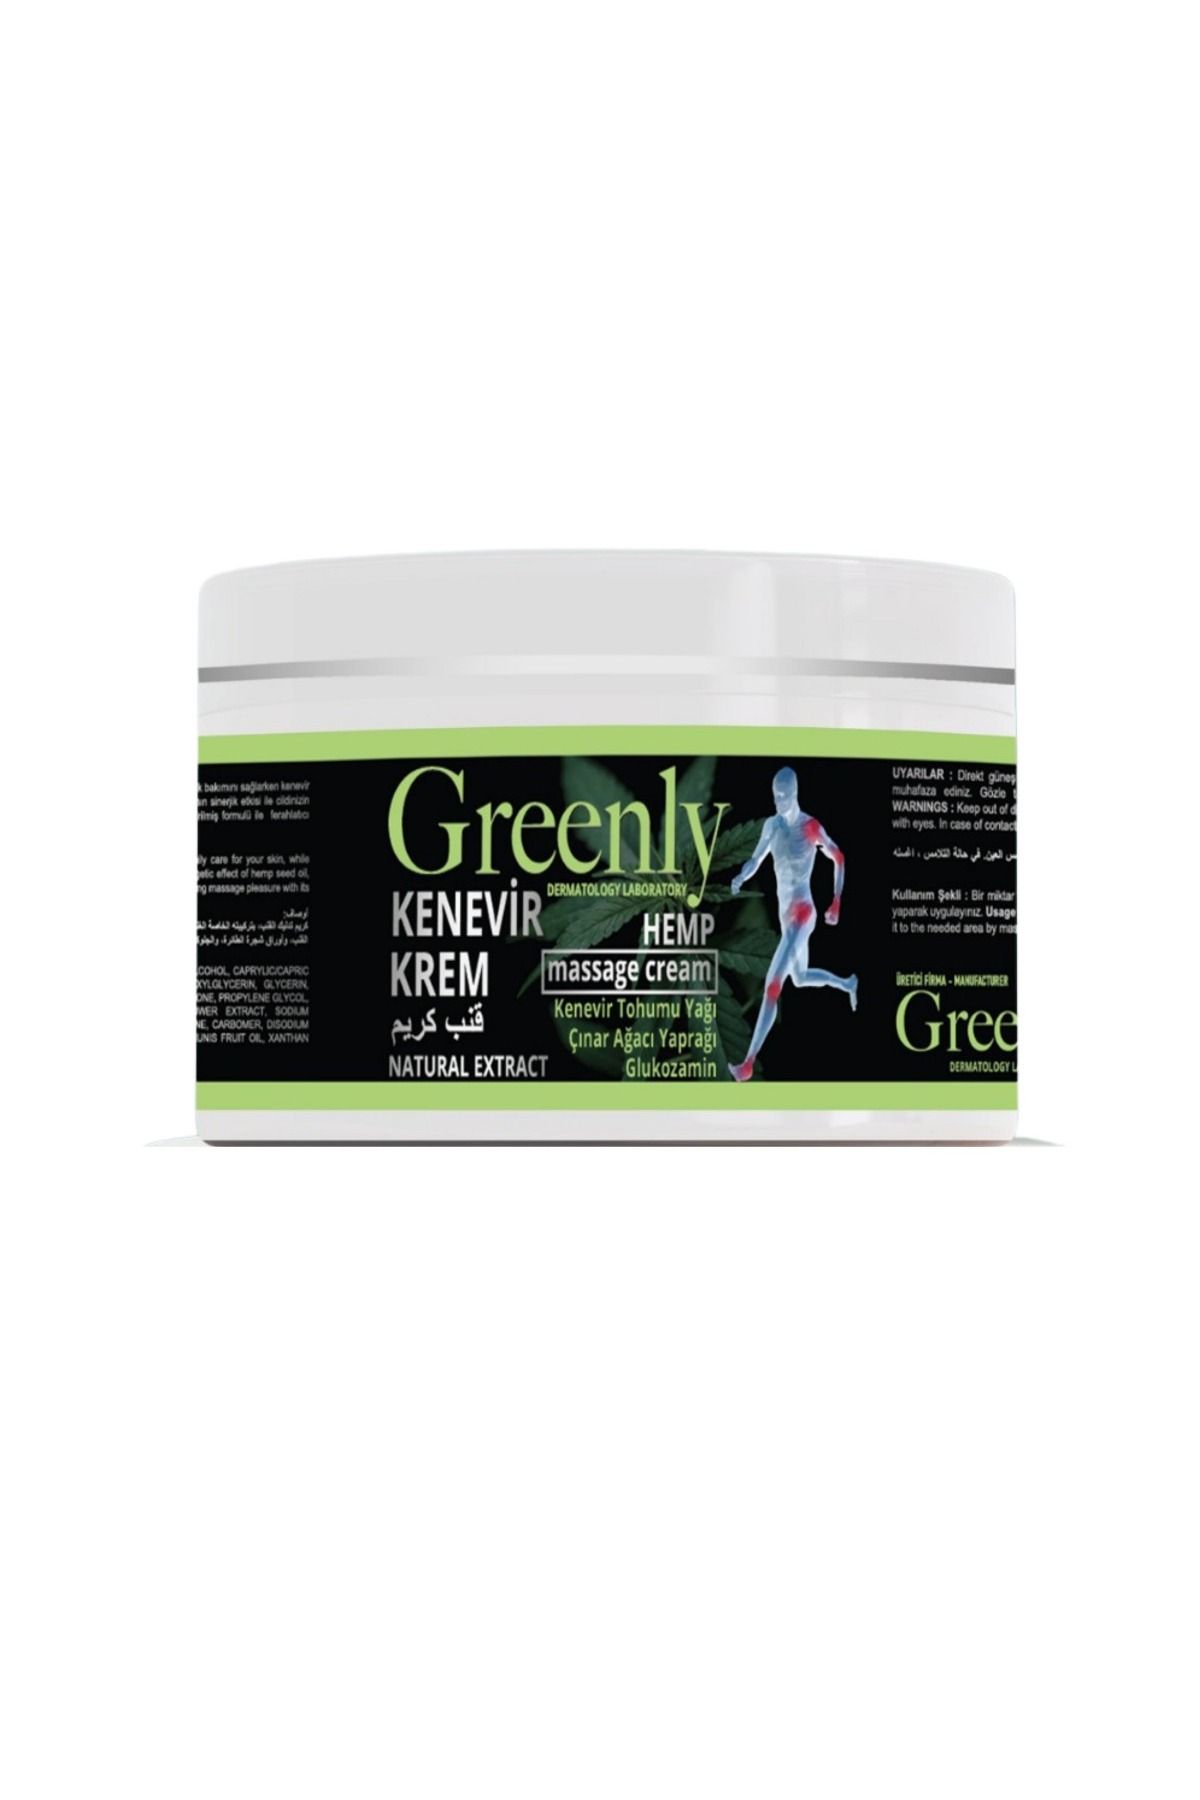 greenly Grennly Hemp Cream Kenevir Kremi Masaj Ve Ağrı Kesici Krem100 Ml x 2 adet